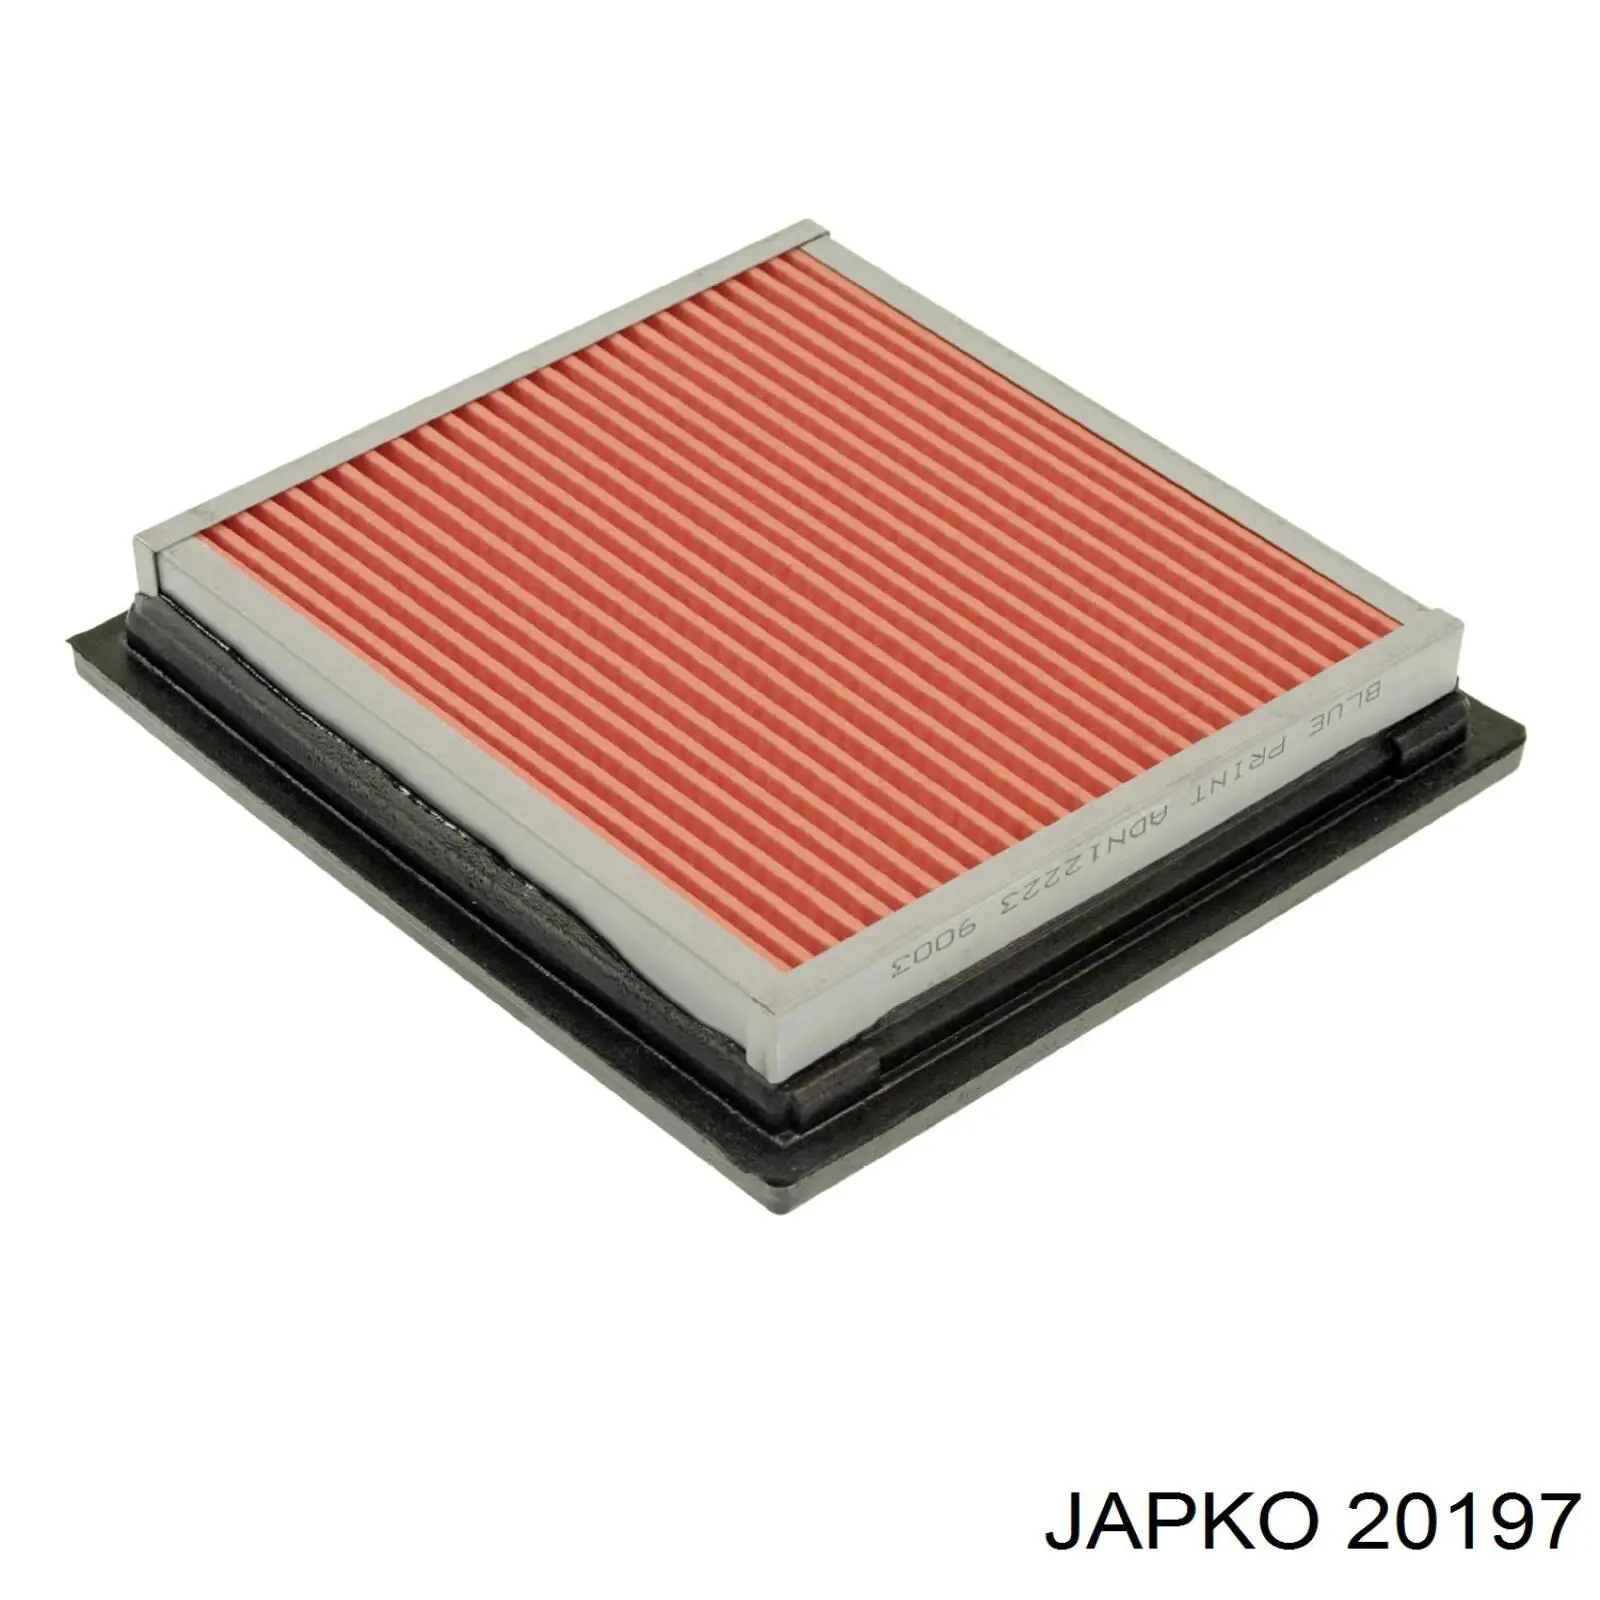 20197 Japko filtro de aire